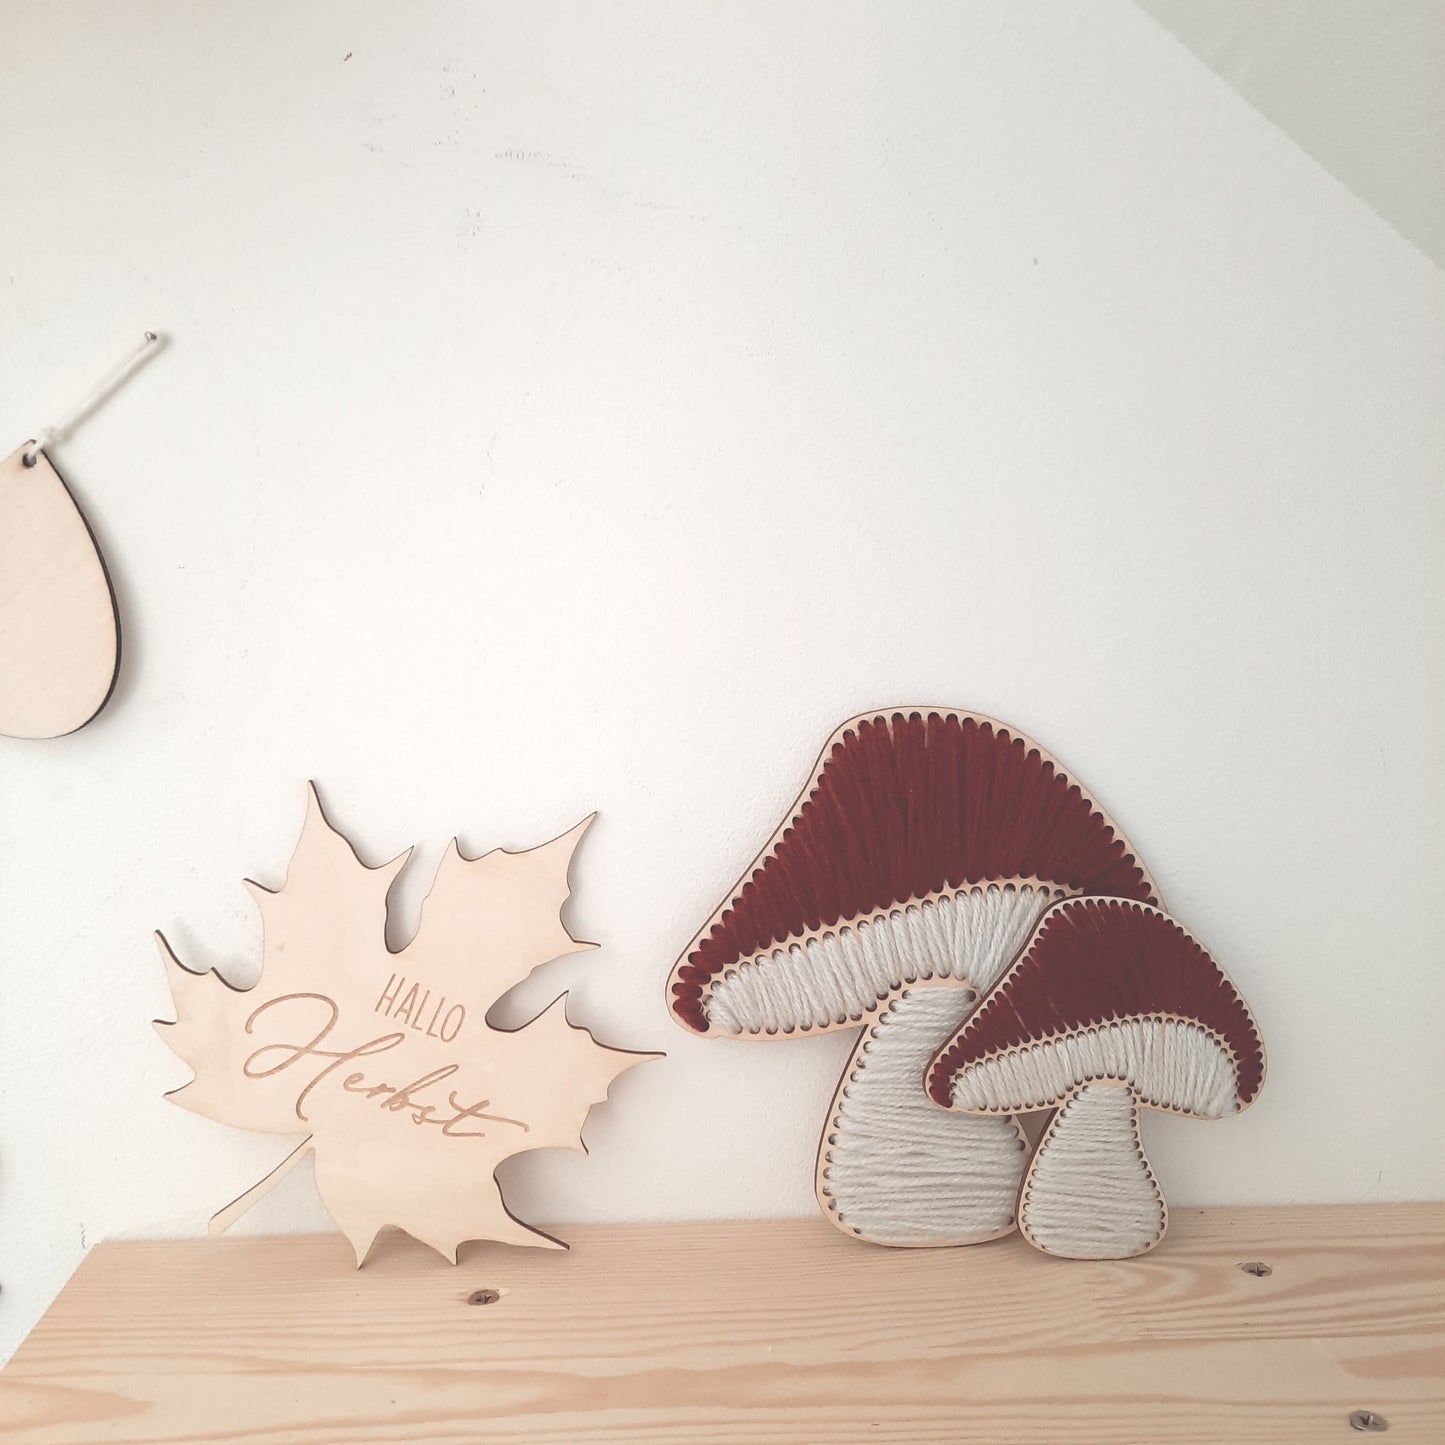 Pilz gestickt, Pilz aus Holz und Wolle, Pilz Holzrohling, Herbstdekoration DIY, Pilz zum Dekorieren